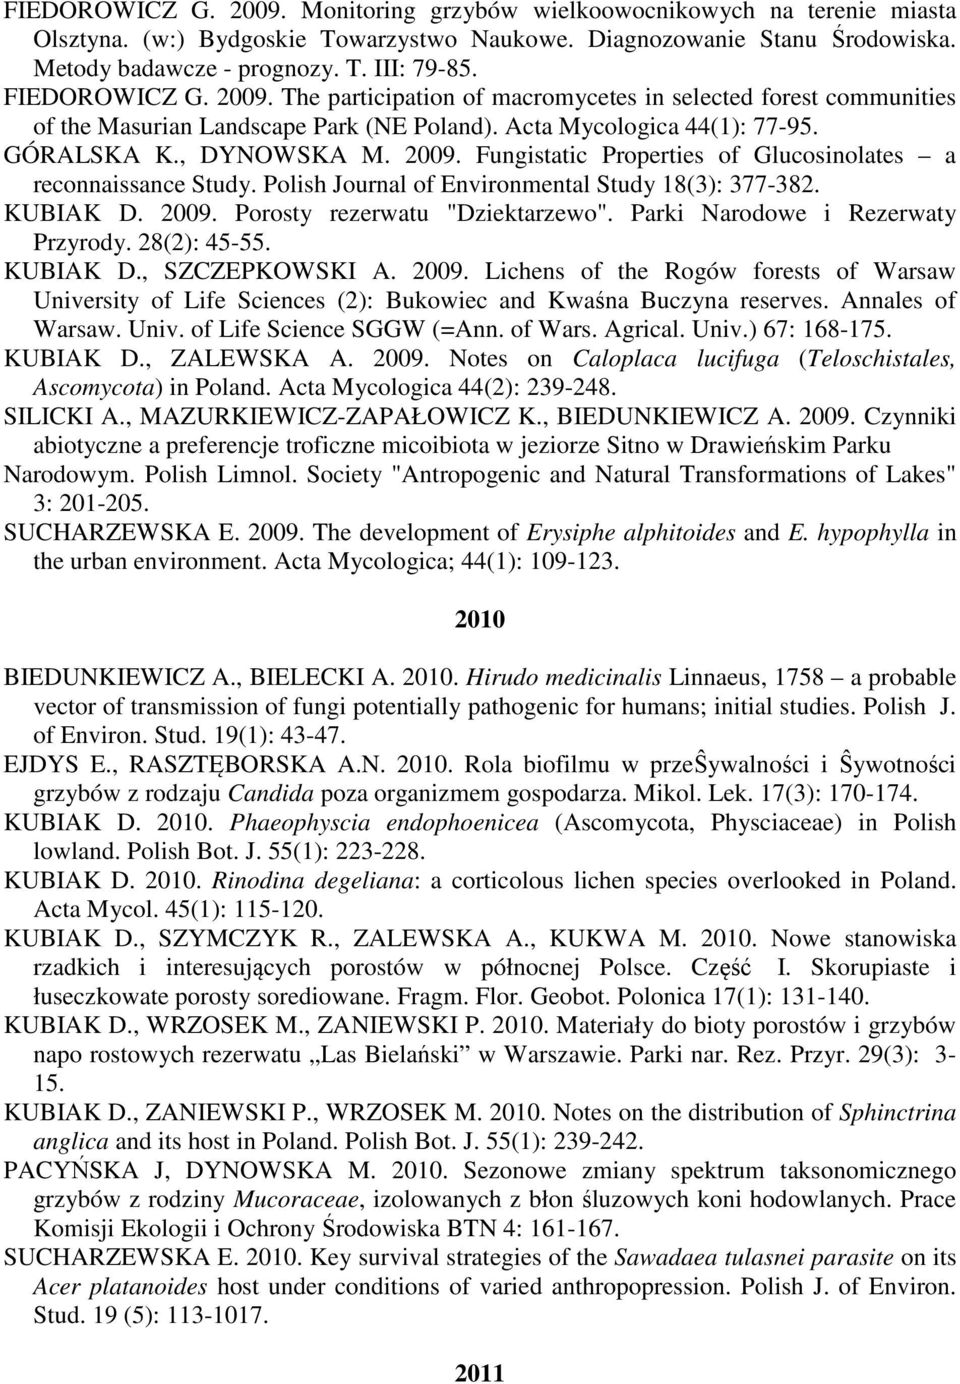 Polish Journal of Environmental Study 18(3): 377-382. KUBIAK D. 2009. Porosty rezerwatu "Dziektarzewo". Parki Narodowe i Rezerwaty Przyrody. 28(2): 45-55. KUBIAK D., SZCZEPKOWSKI A. 2009. Lichens of the Rogów forests of Warsaw University of Life Sciences (2): Bukowiec and Kwaśna Buczyna reserves.